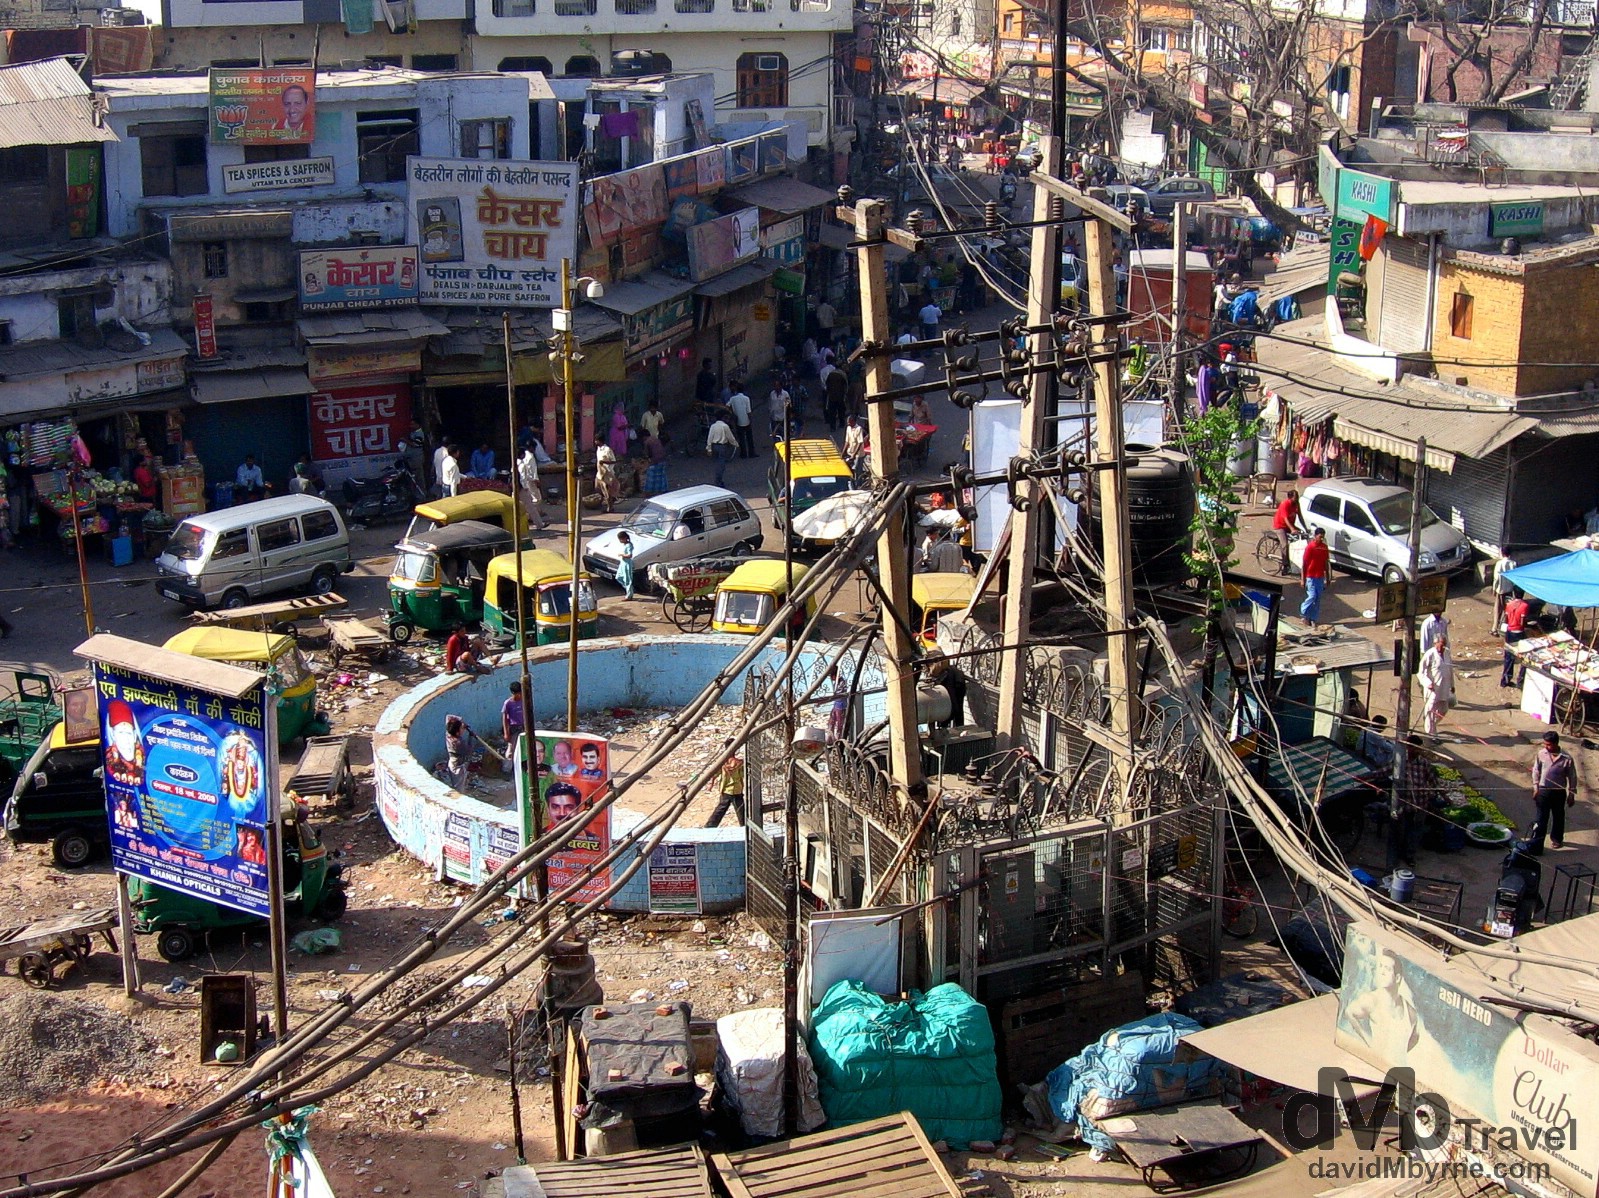 Main Bazaar in the travellers hangout of Paharganj in Delhi, India. March 21, 2008.